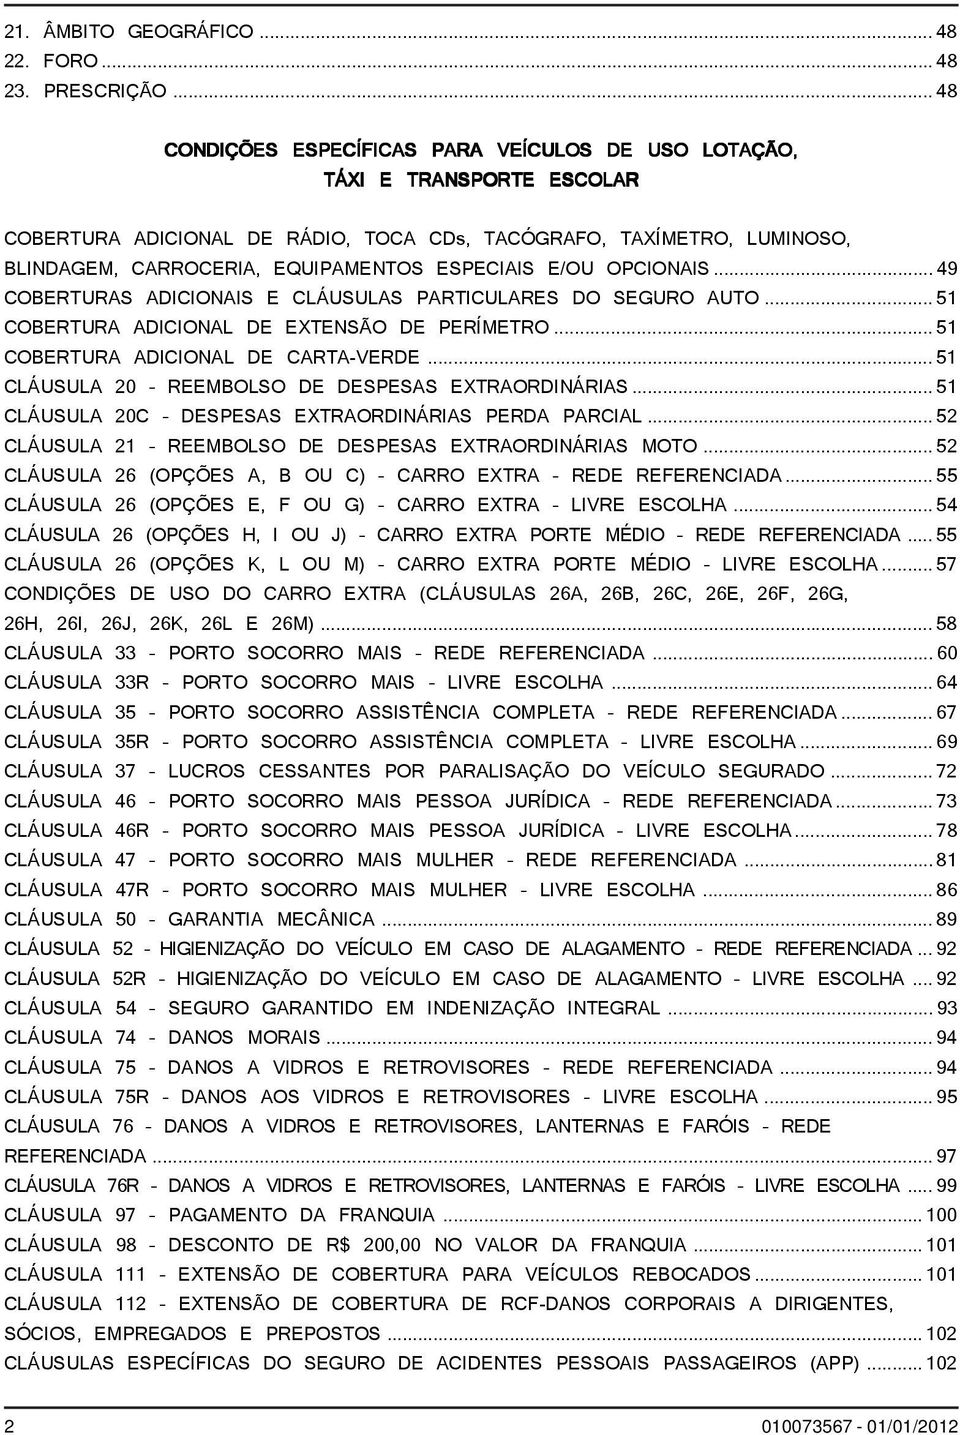 ESPECIAIS E/OU OPCIONAIS...49 COBERTURAS ADICIONAIS E CLÁUSULAS PARTICULARES DO SEGURO AUTO... 51 COBERTURA ADICIONAL DE EXTENSÃO DE PERÍMETRO... 51 COBERTURA ADICIONAL DE CARTA-VERDE.